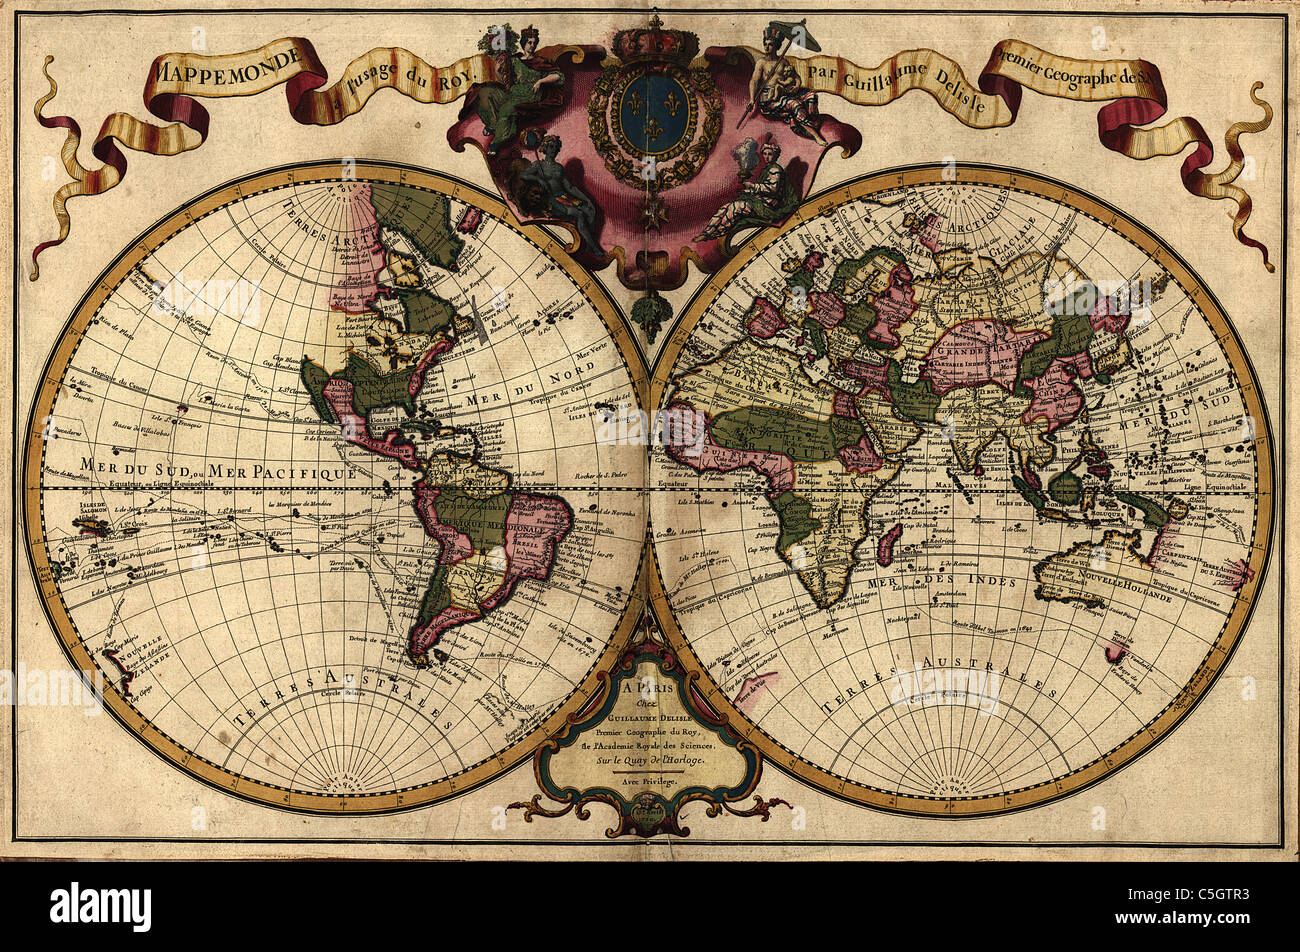 Mappemonde a l'usage du Roy - antica mappa del mondo da Guillaume de L'Isle, 1720 Foto Stock